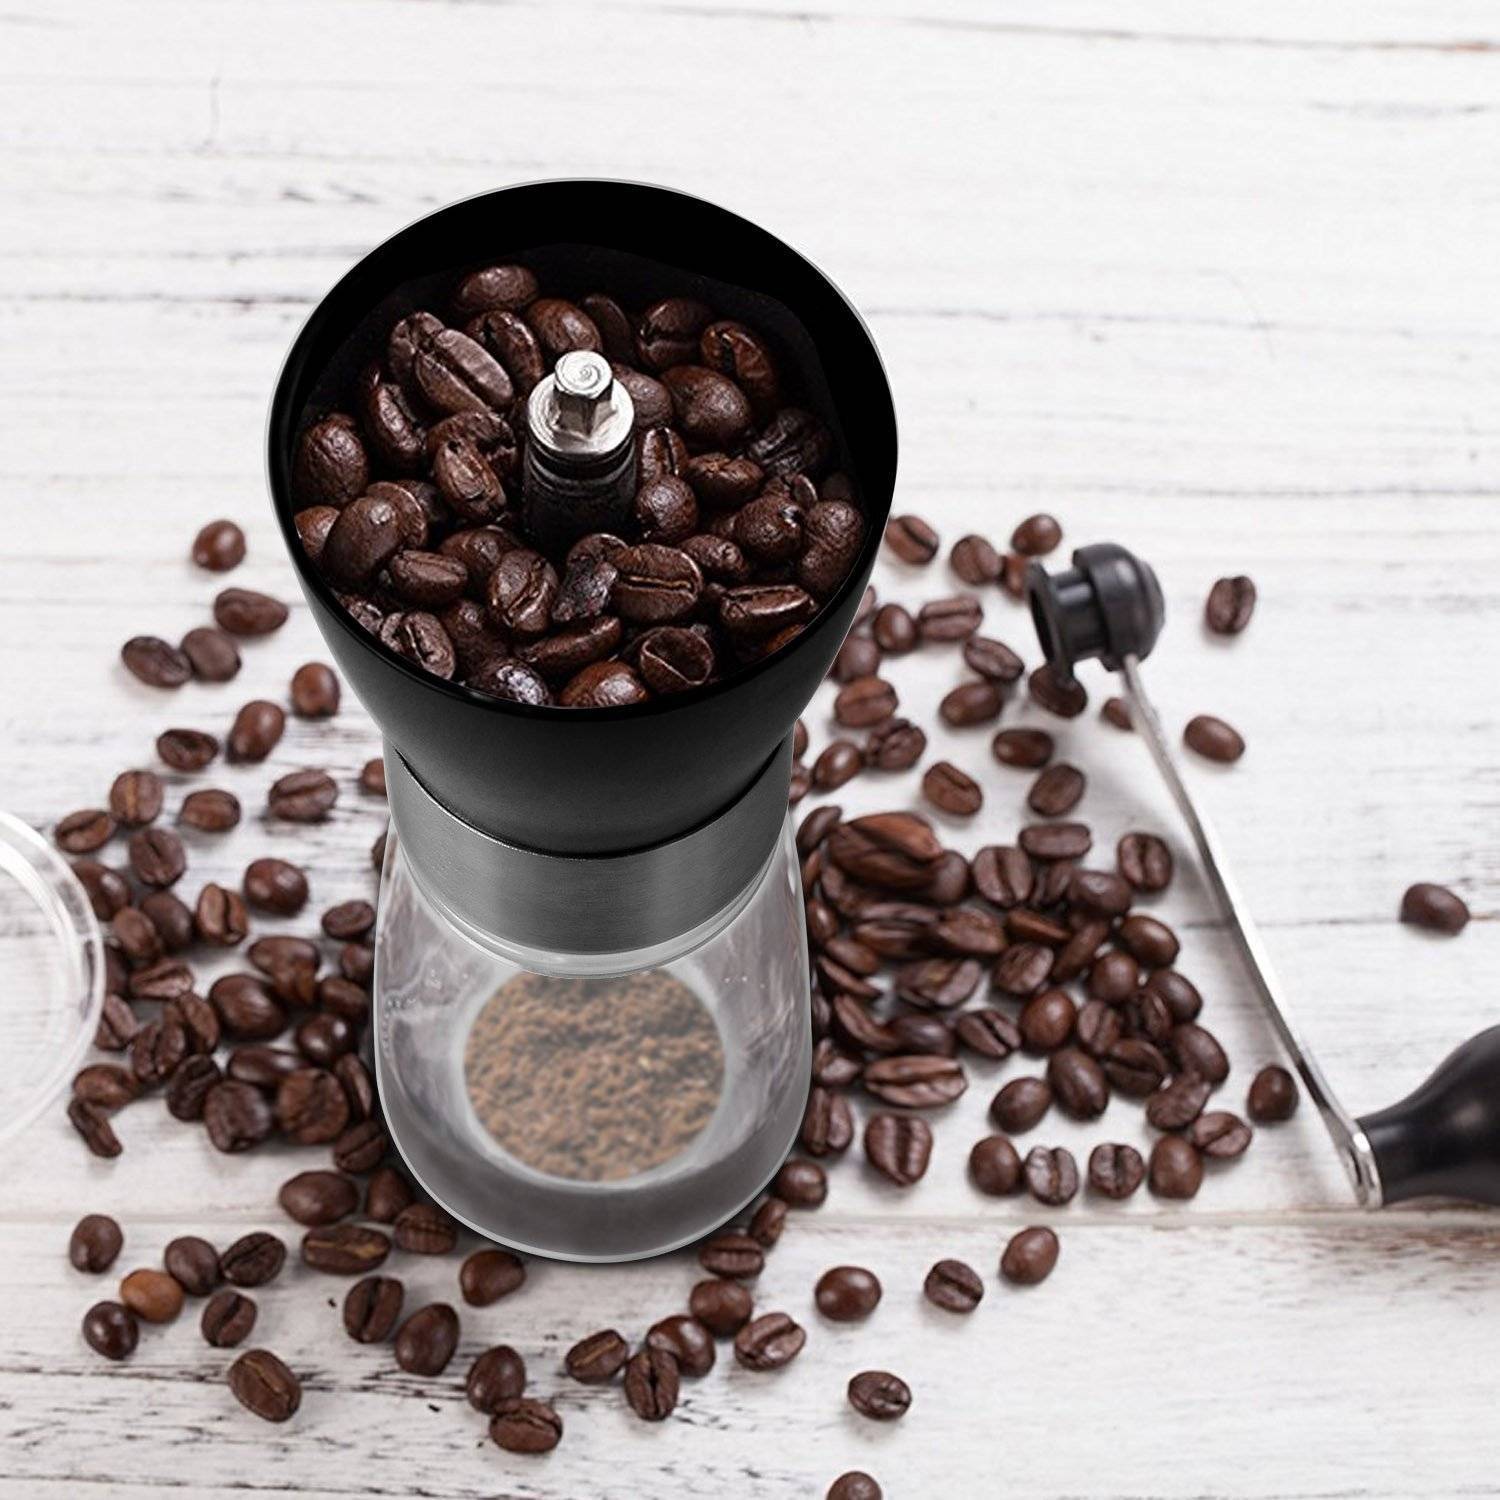 Эксперимент: сможет ли мельничка для специй смолоть кофе? от эксперта